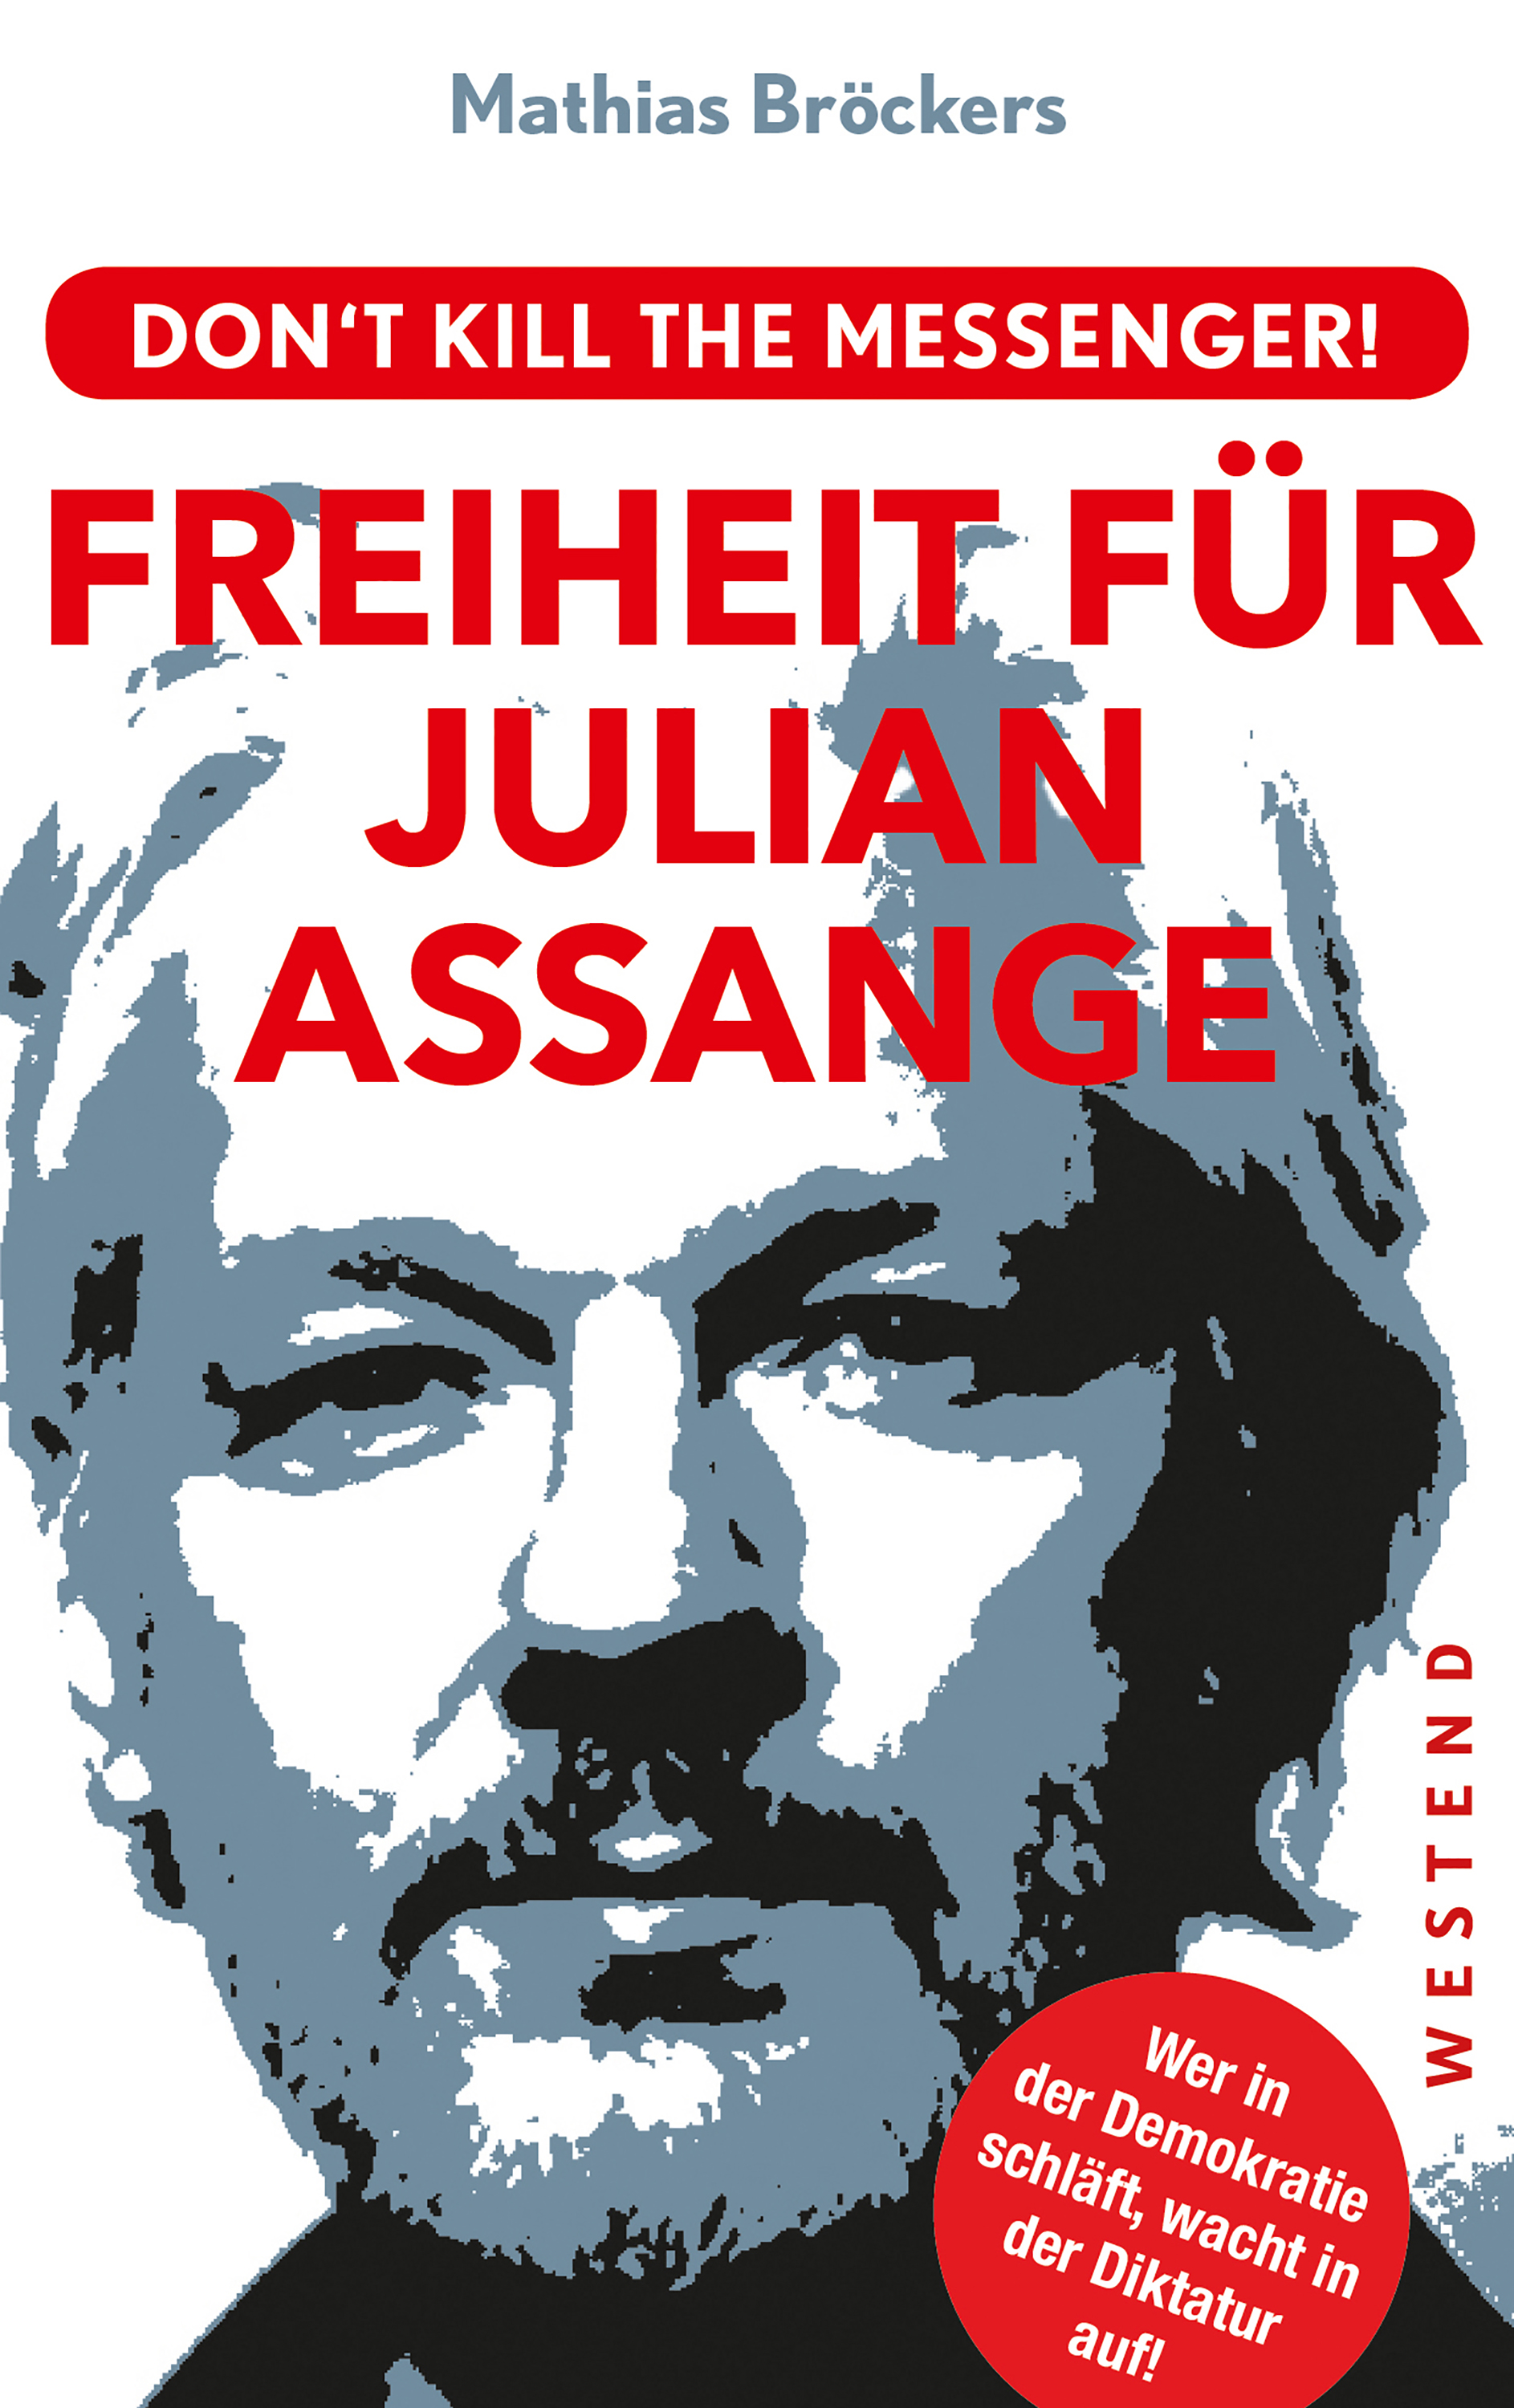 Mathias Brockers Freiheit für Julian Assange!